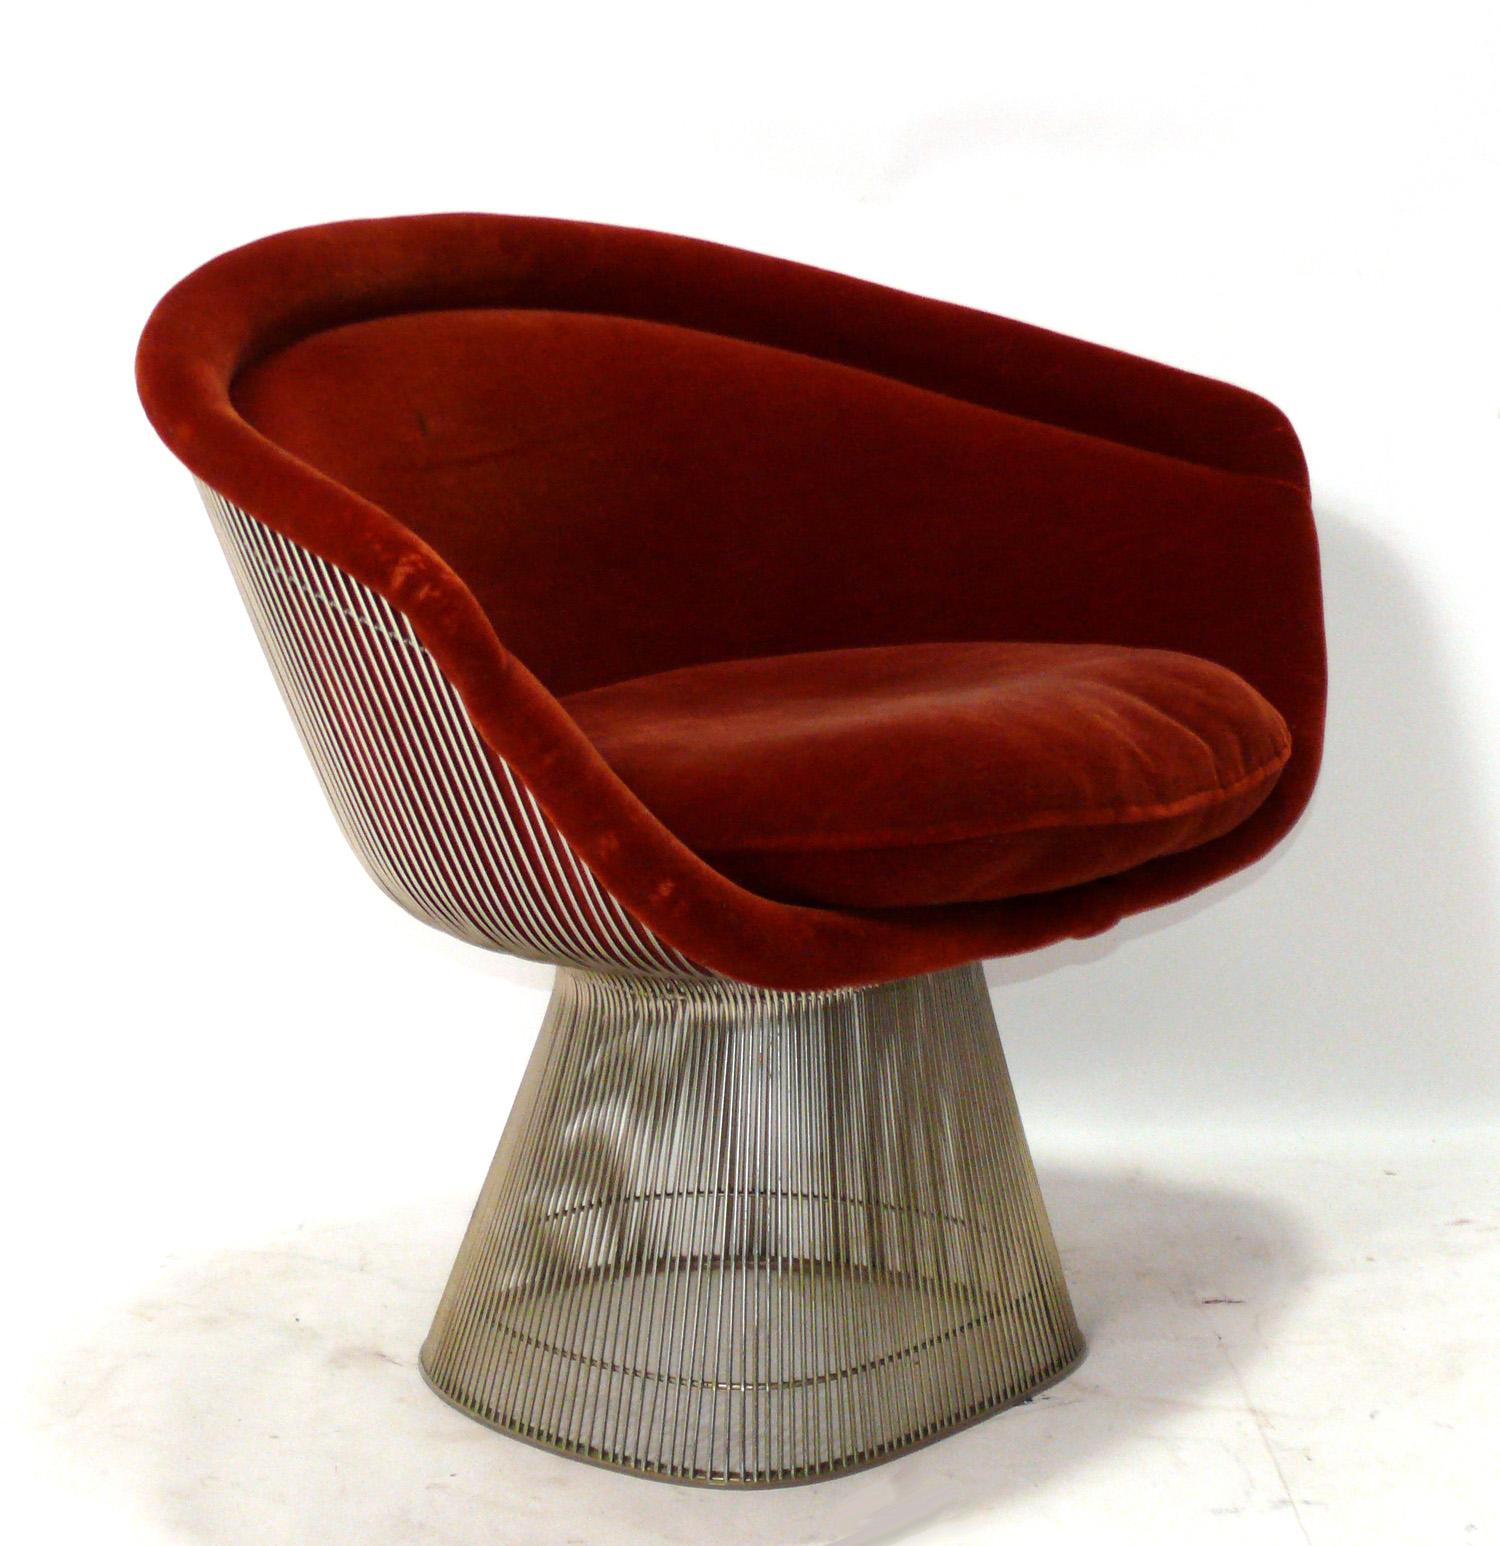 Skulpturaler, moderner Loungesessel in Nickeloptik, entworfen von Warren Platner für Knoll, ca. 1980er Jahre. Signiert mit Knoll Label. Dieser Stuhl wird gerade neu gepolstert und kann mit Ihrem Stoff ergänzt werden. Schicken Sie uns einfach 5 Meter